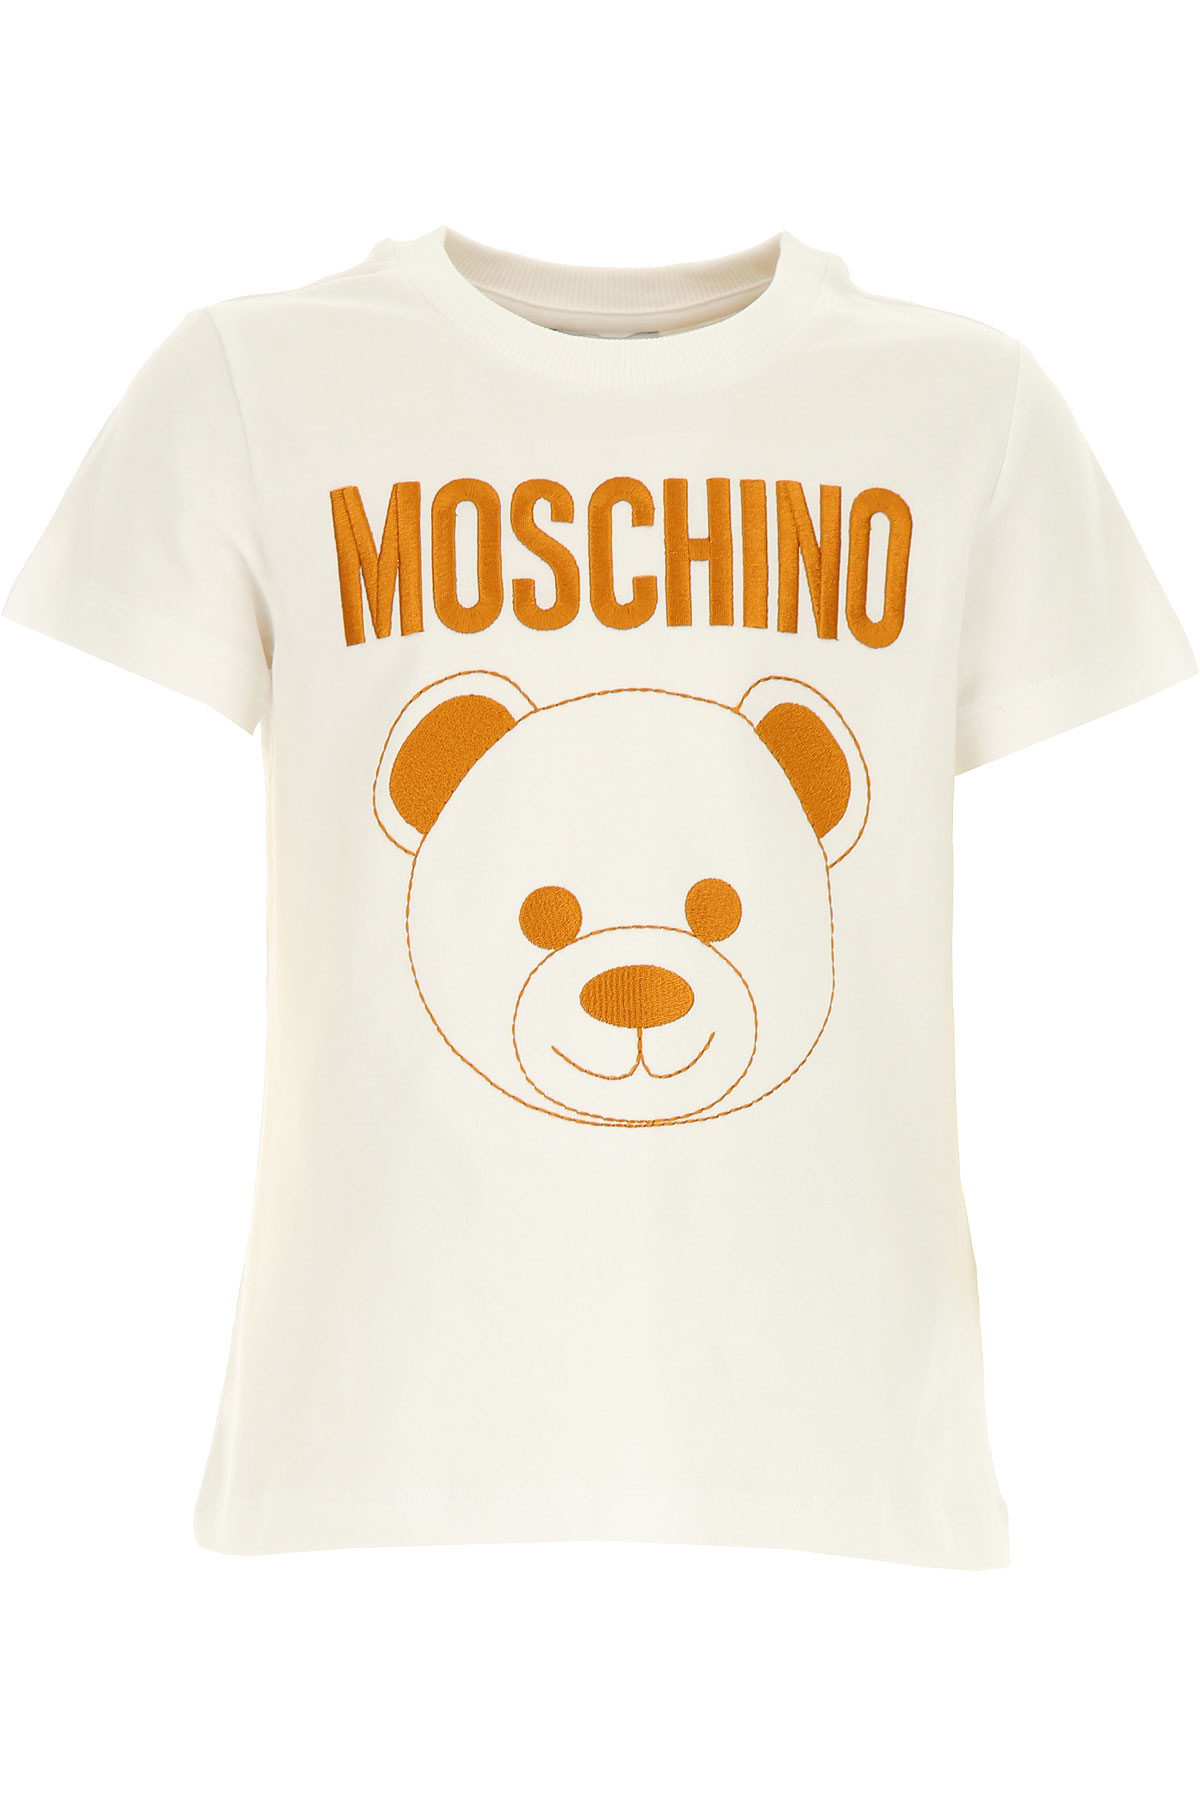 Moschino Kinder T-Shirt für Mädchen Günstig im Sale, Weiss, Baumwolle, 2017, 10Y 12Y 4Y 8Y